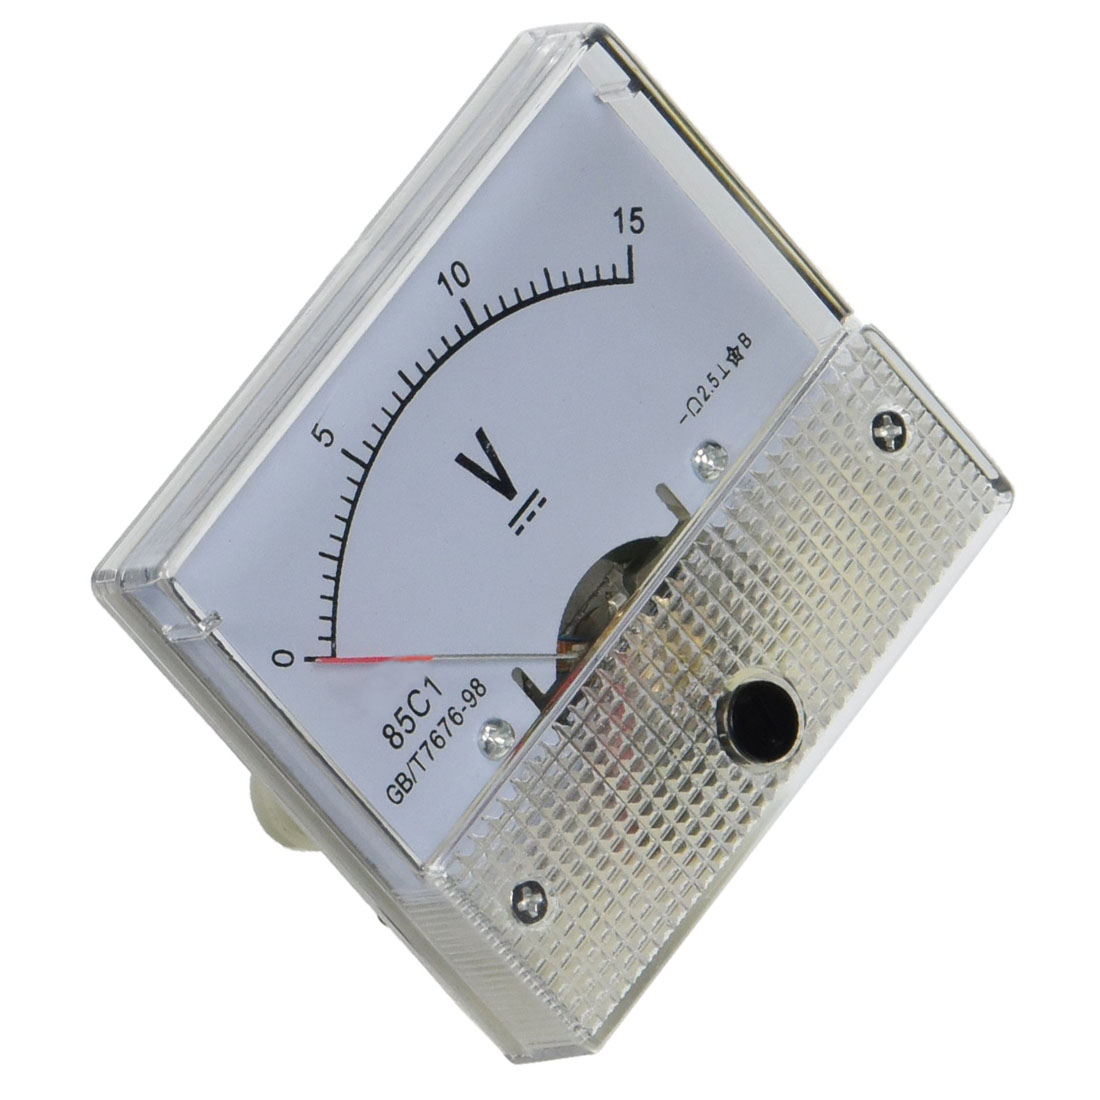 HLZS-85C1 Fine Tuning Dial Analog Volt Panel Meter Gauge DC 0-15V